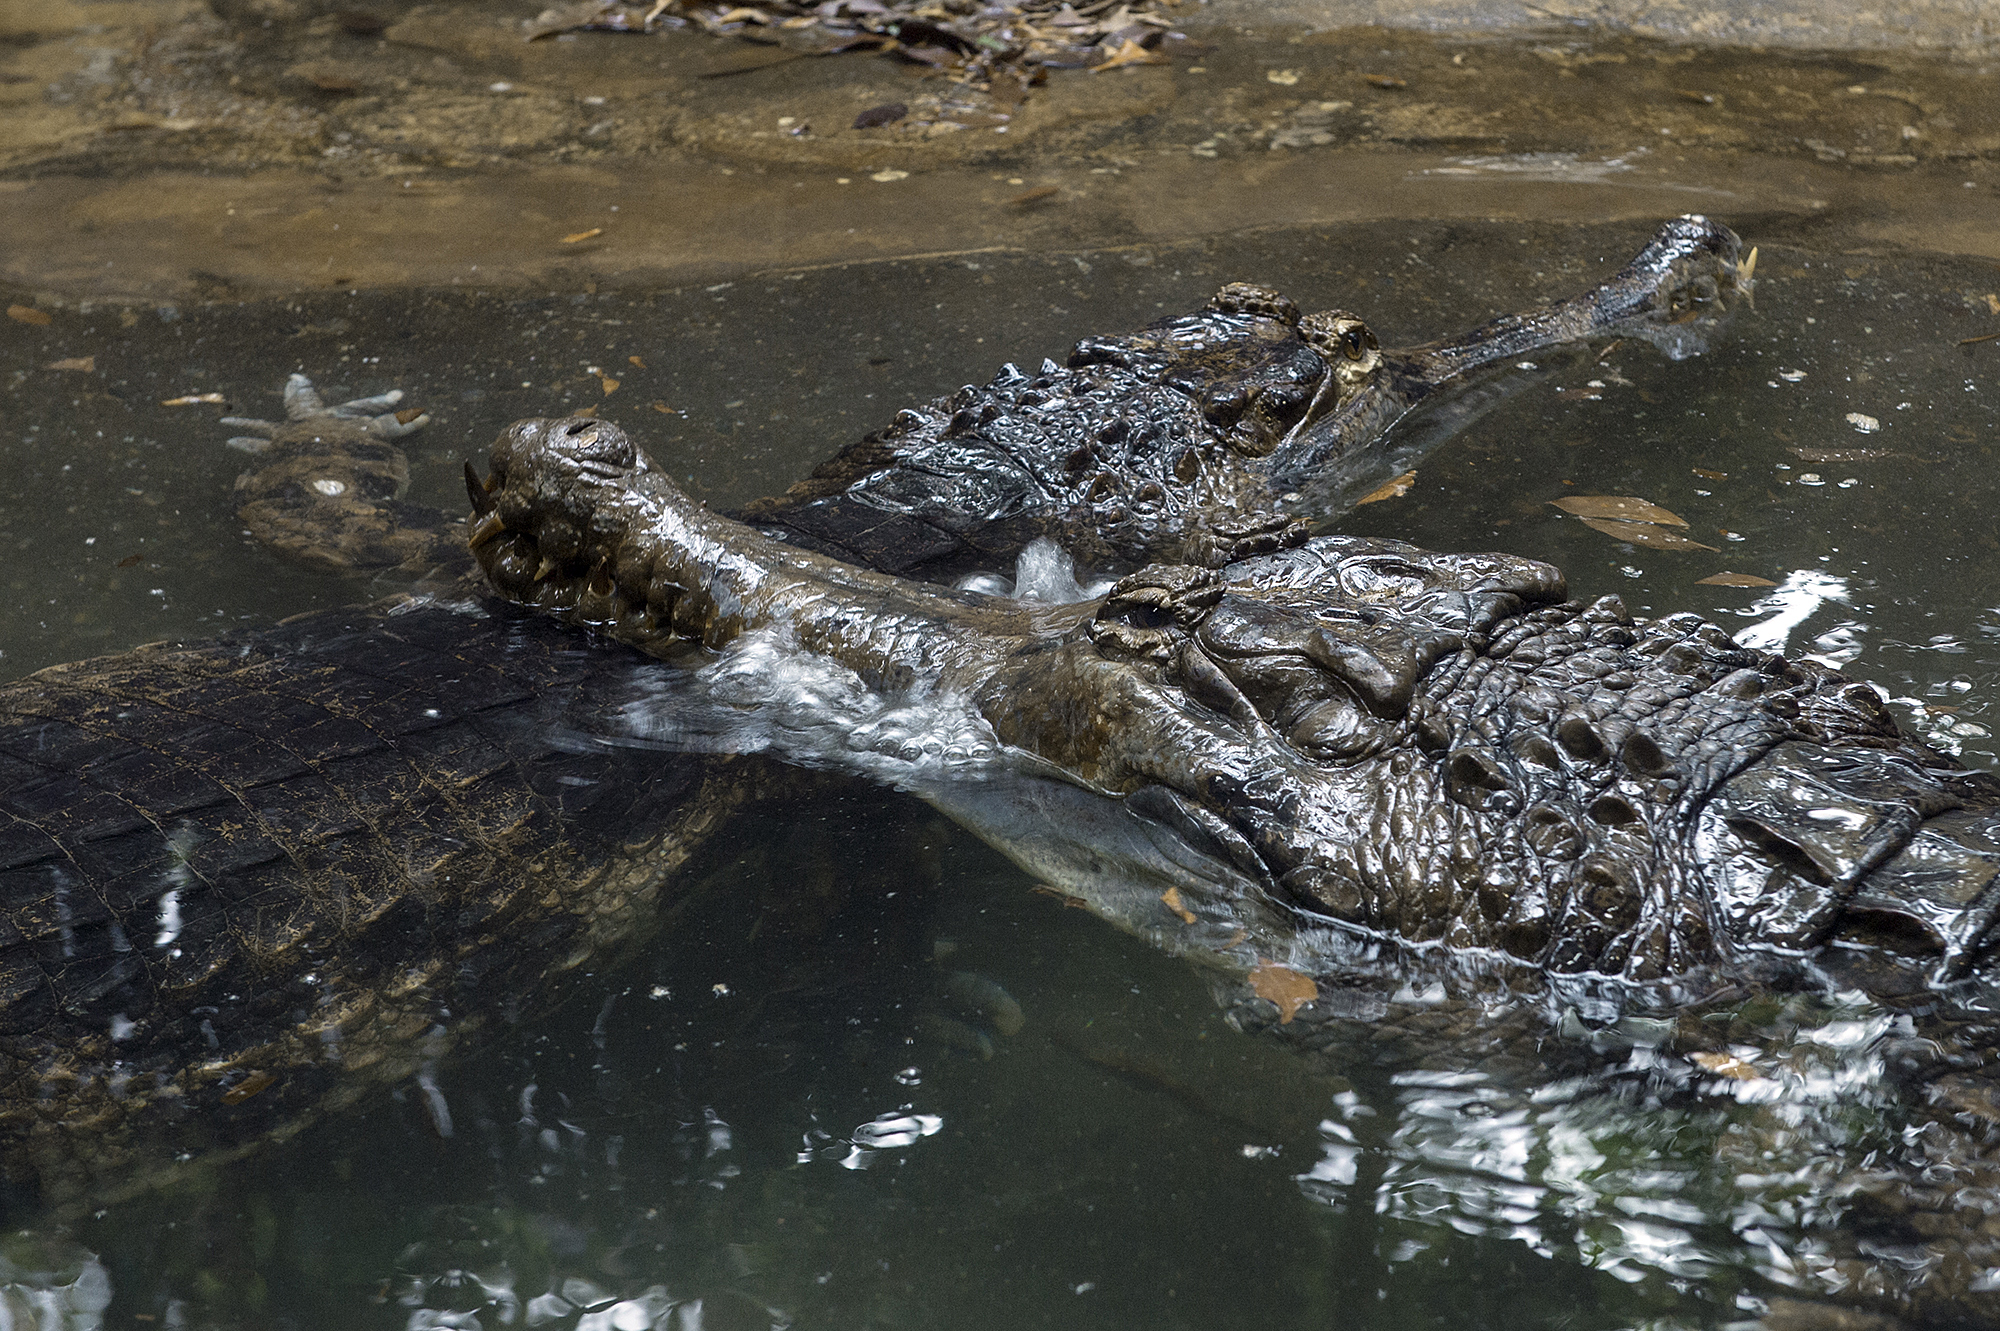 Crocodilian Courtship – Elvis and Priscilla